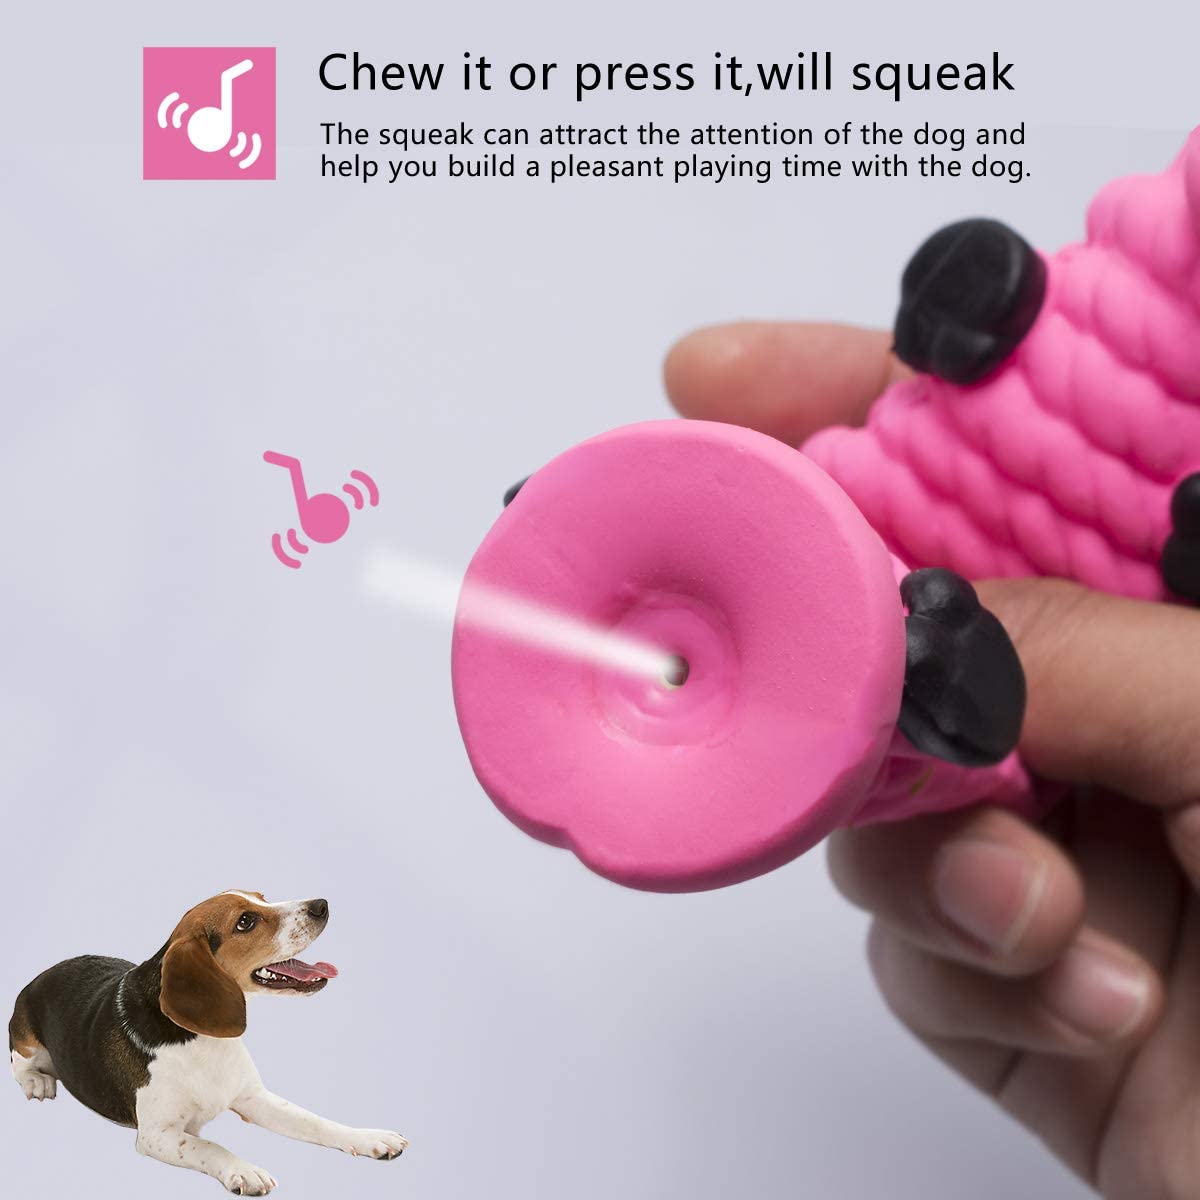  Petper Cw-0070EU - Juguete con sonido de látex para perros, juguetes para animales interactivos para perros adultos y cachorros 